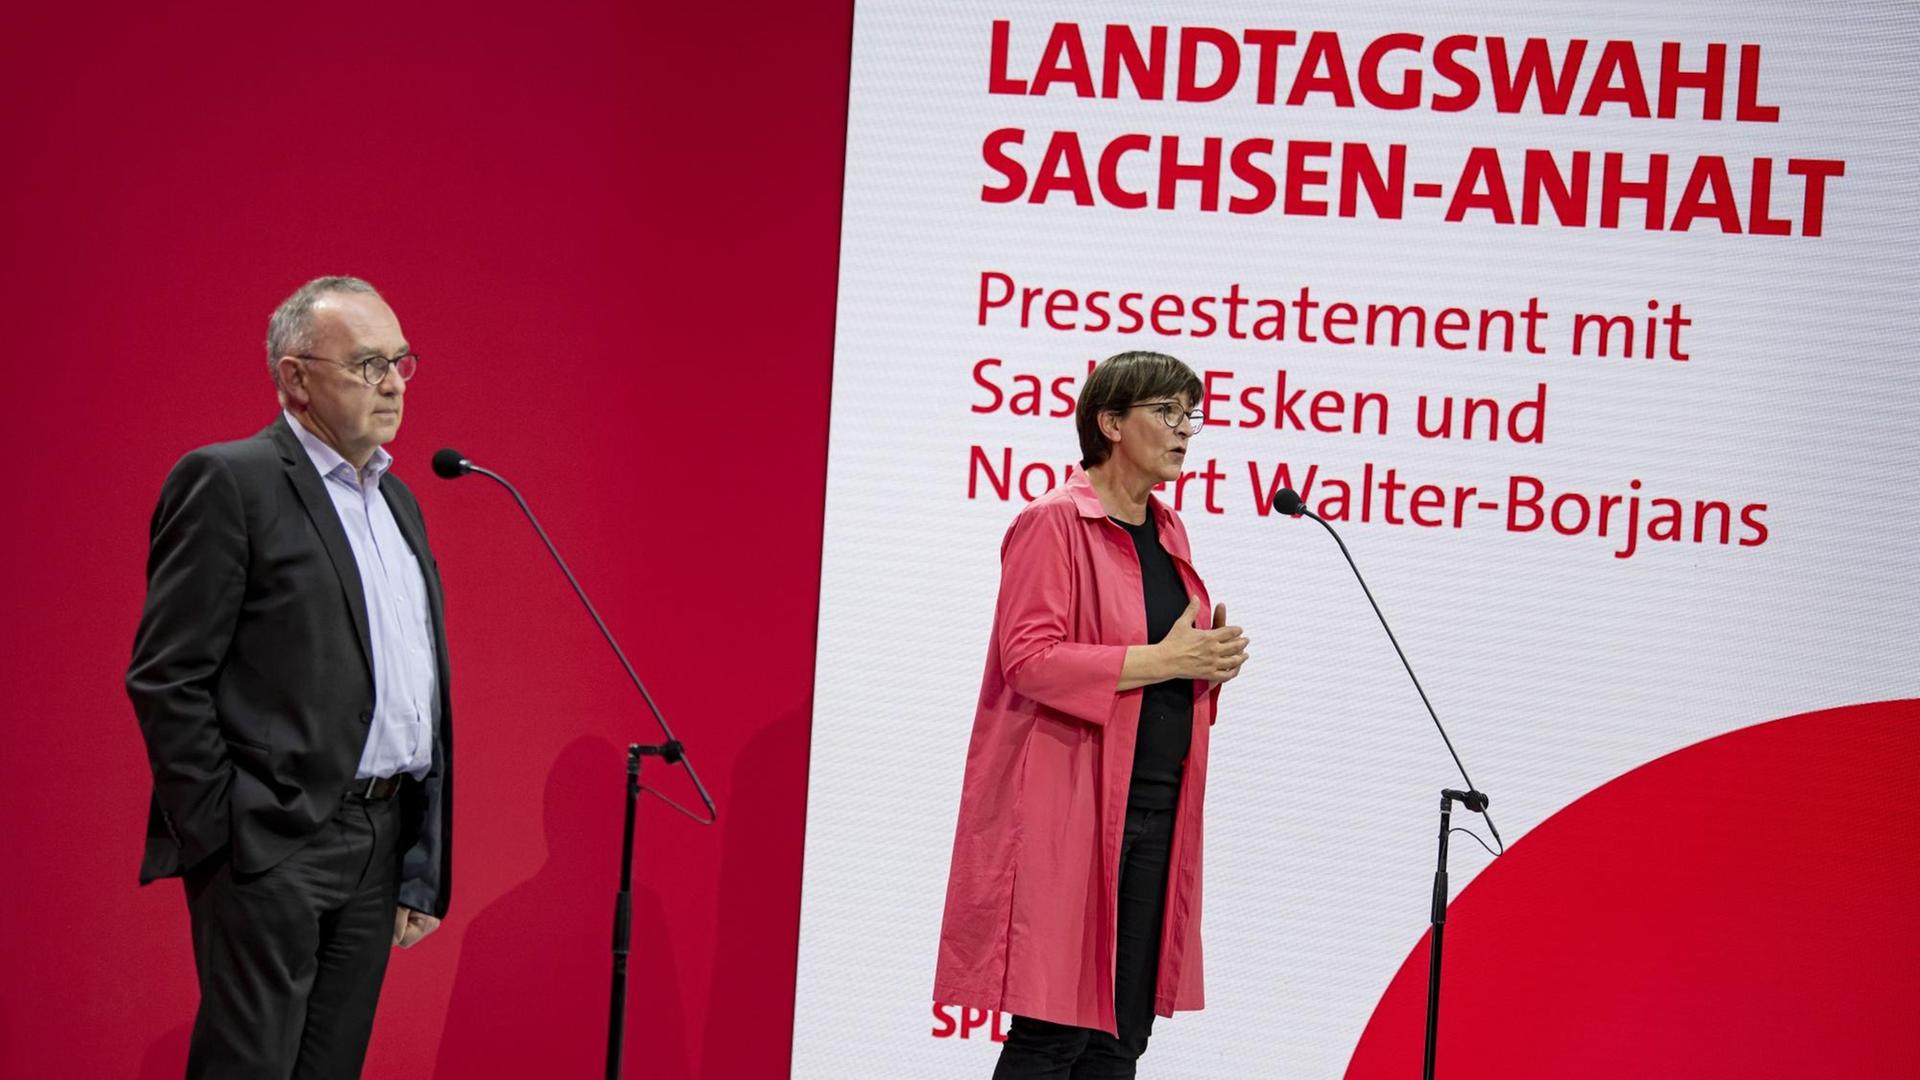 Norbert Walter-Borjans (l) und Saskia Esken, Parteivorsitzende der SPD, äußern sich zur Landtagswahl in Sachsen-Anhalt im Atrium des Willy-Brandt-Hauses.